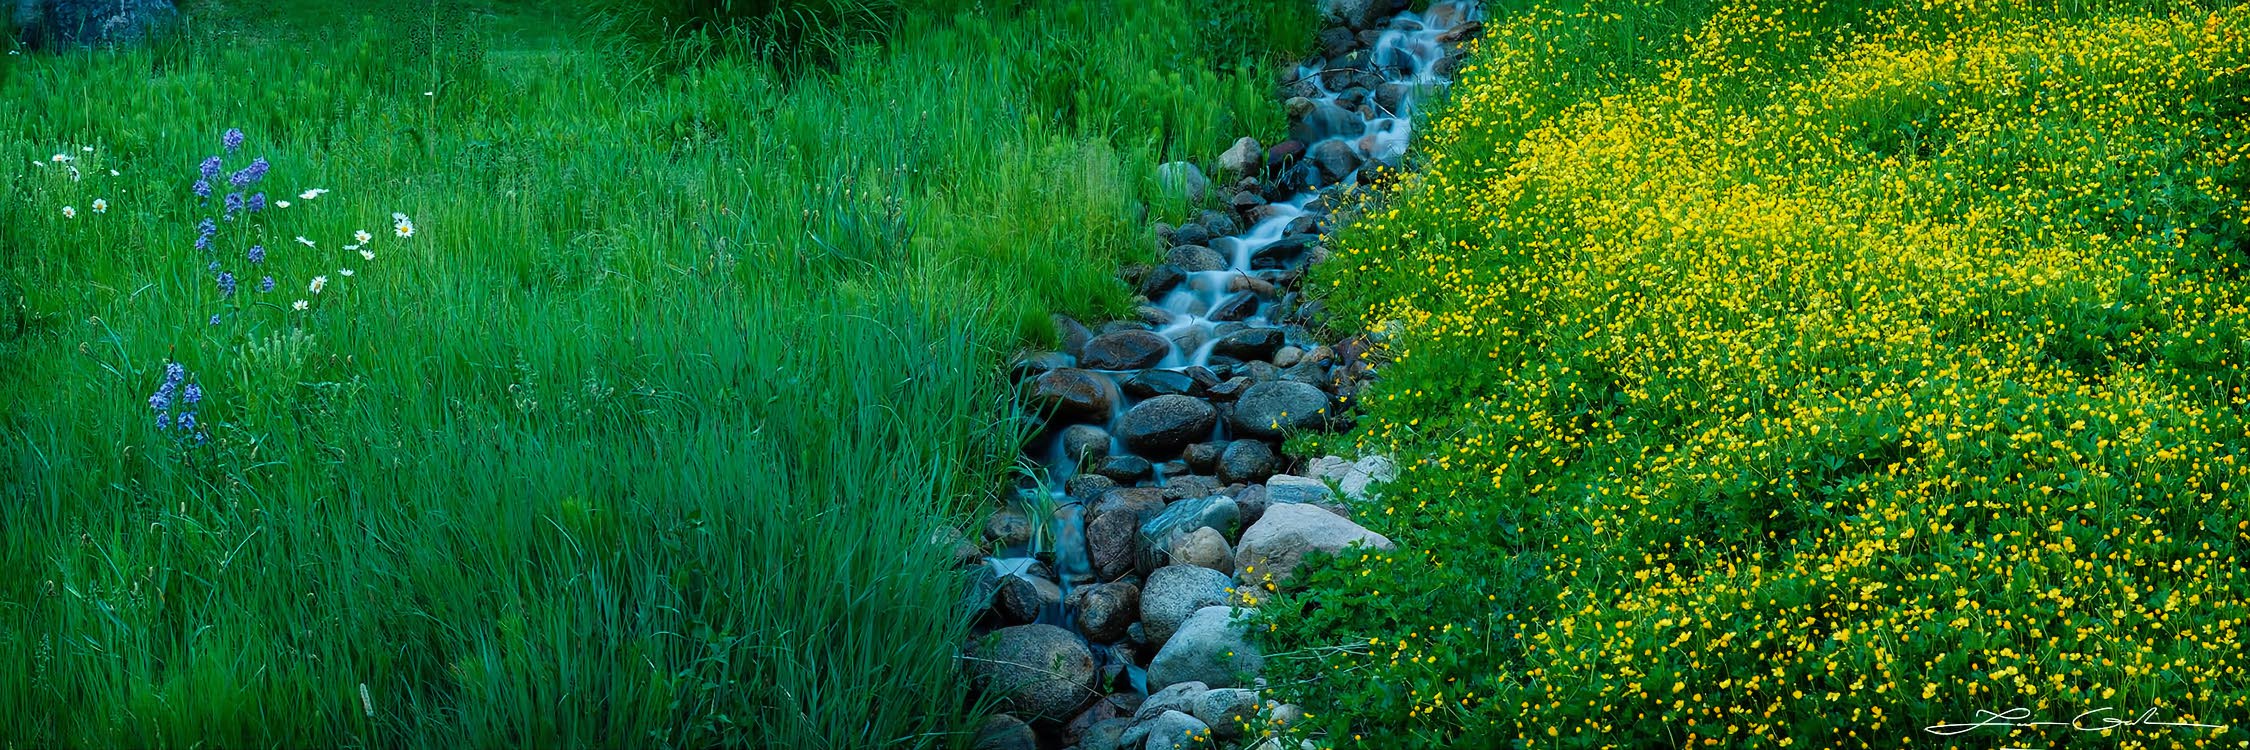 A water brook running through a field of green grass and flowers - Aspen, Colorado